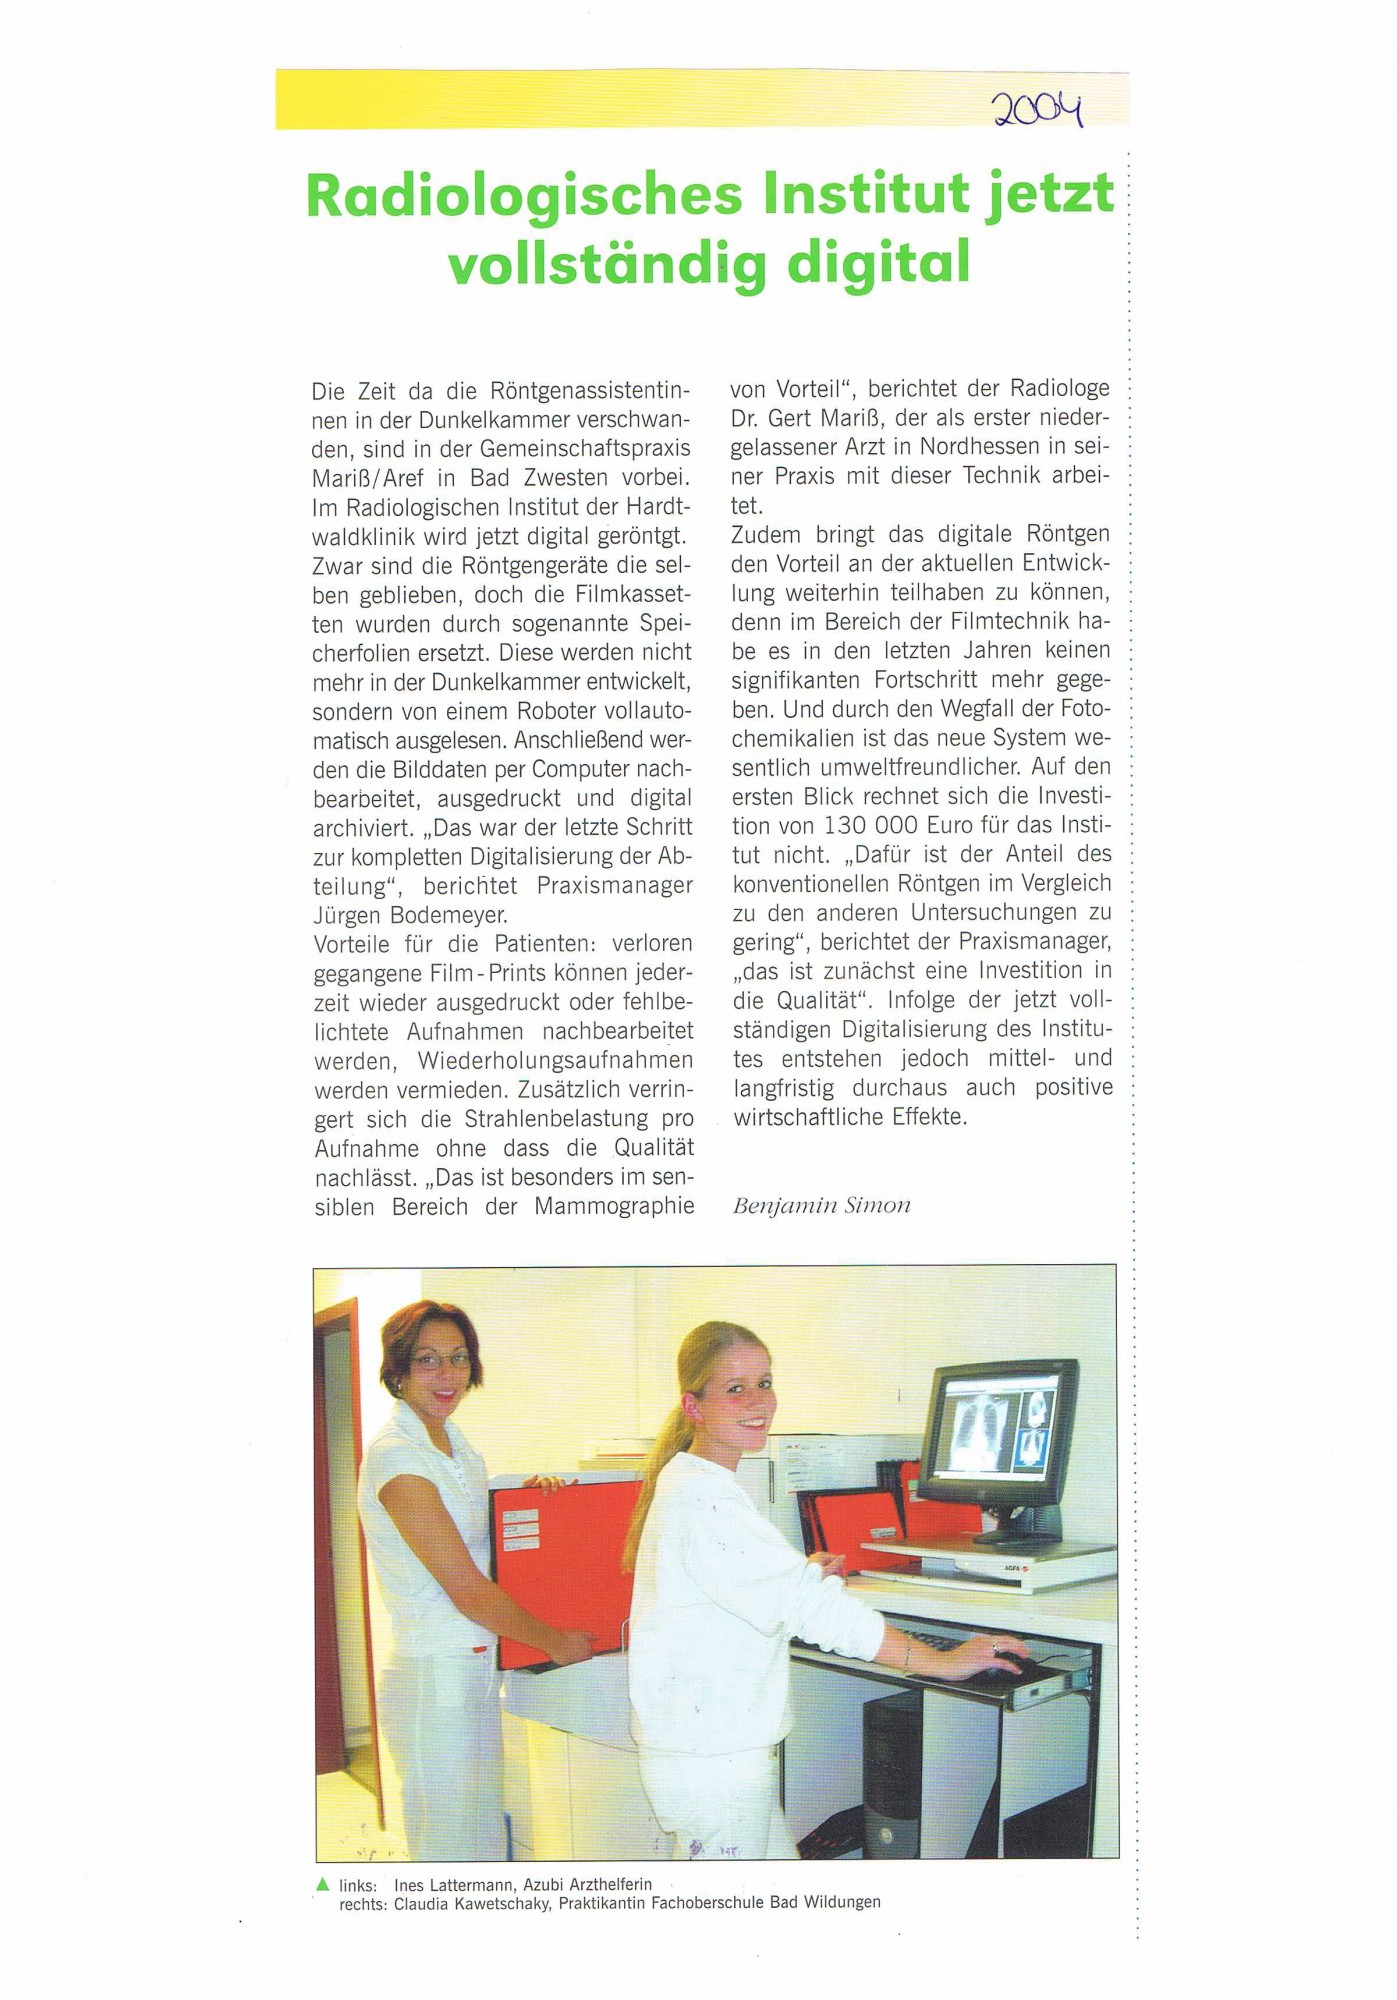 2004 Radiologisches Institut jetzt vollständig digital-001